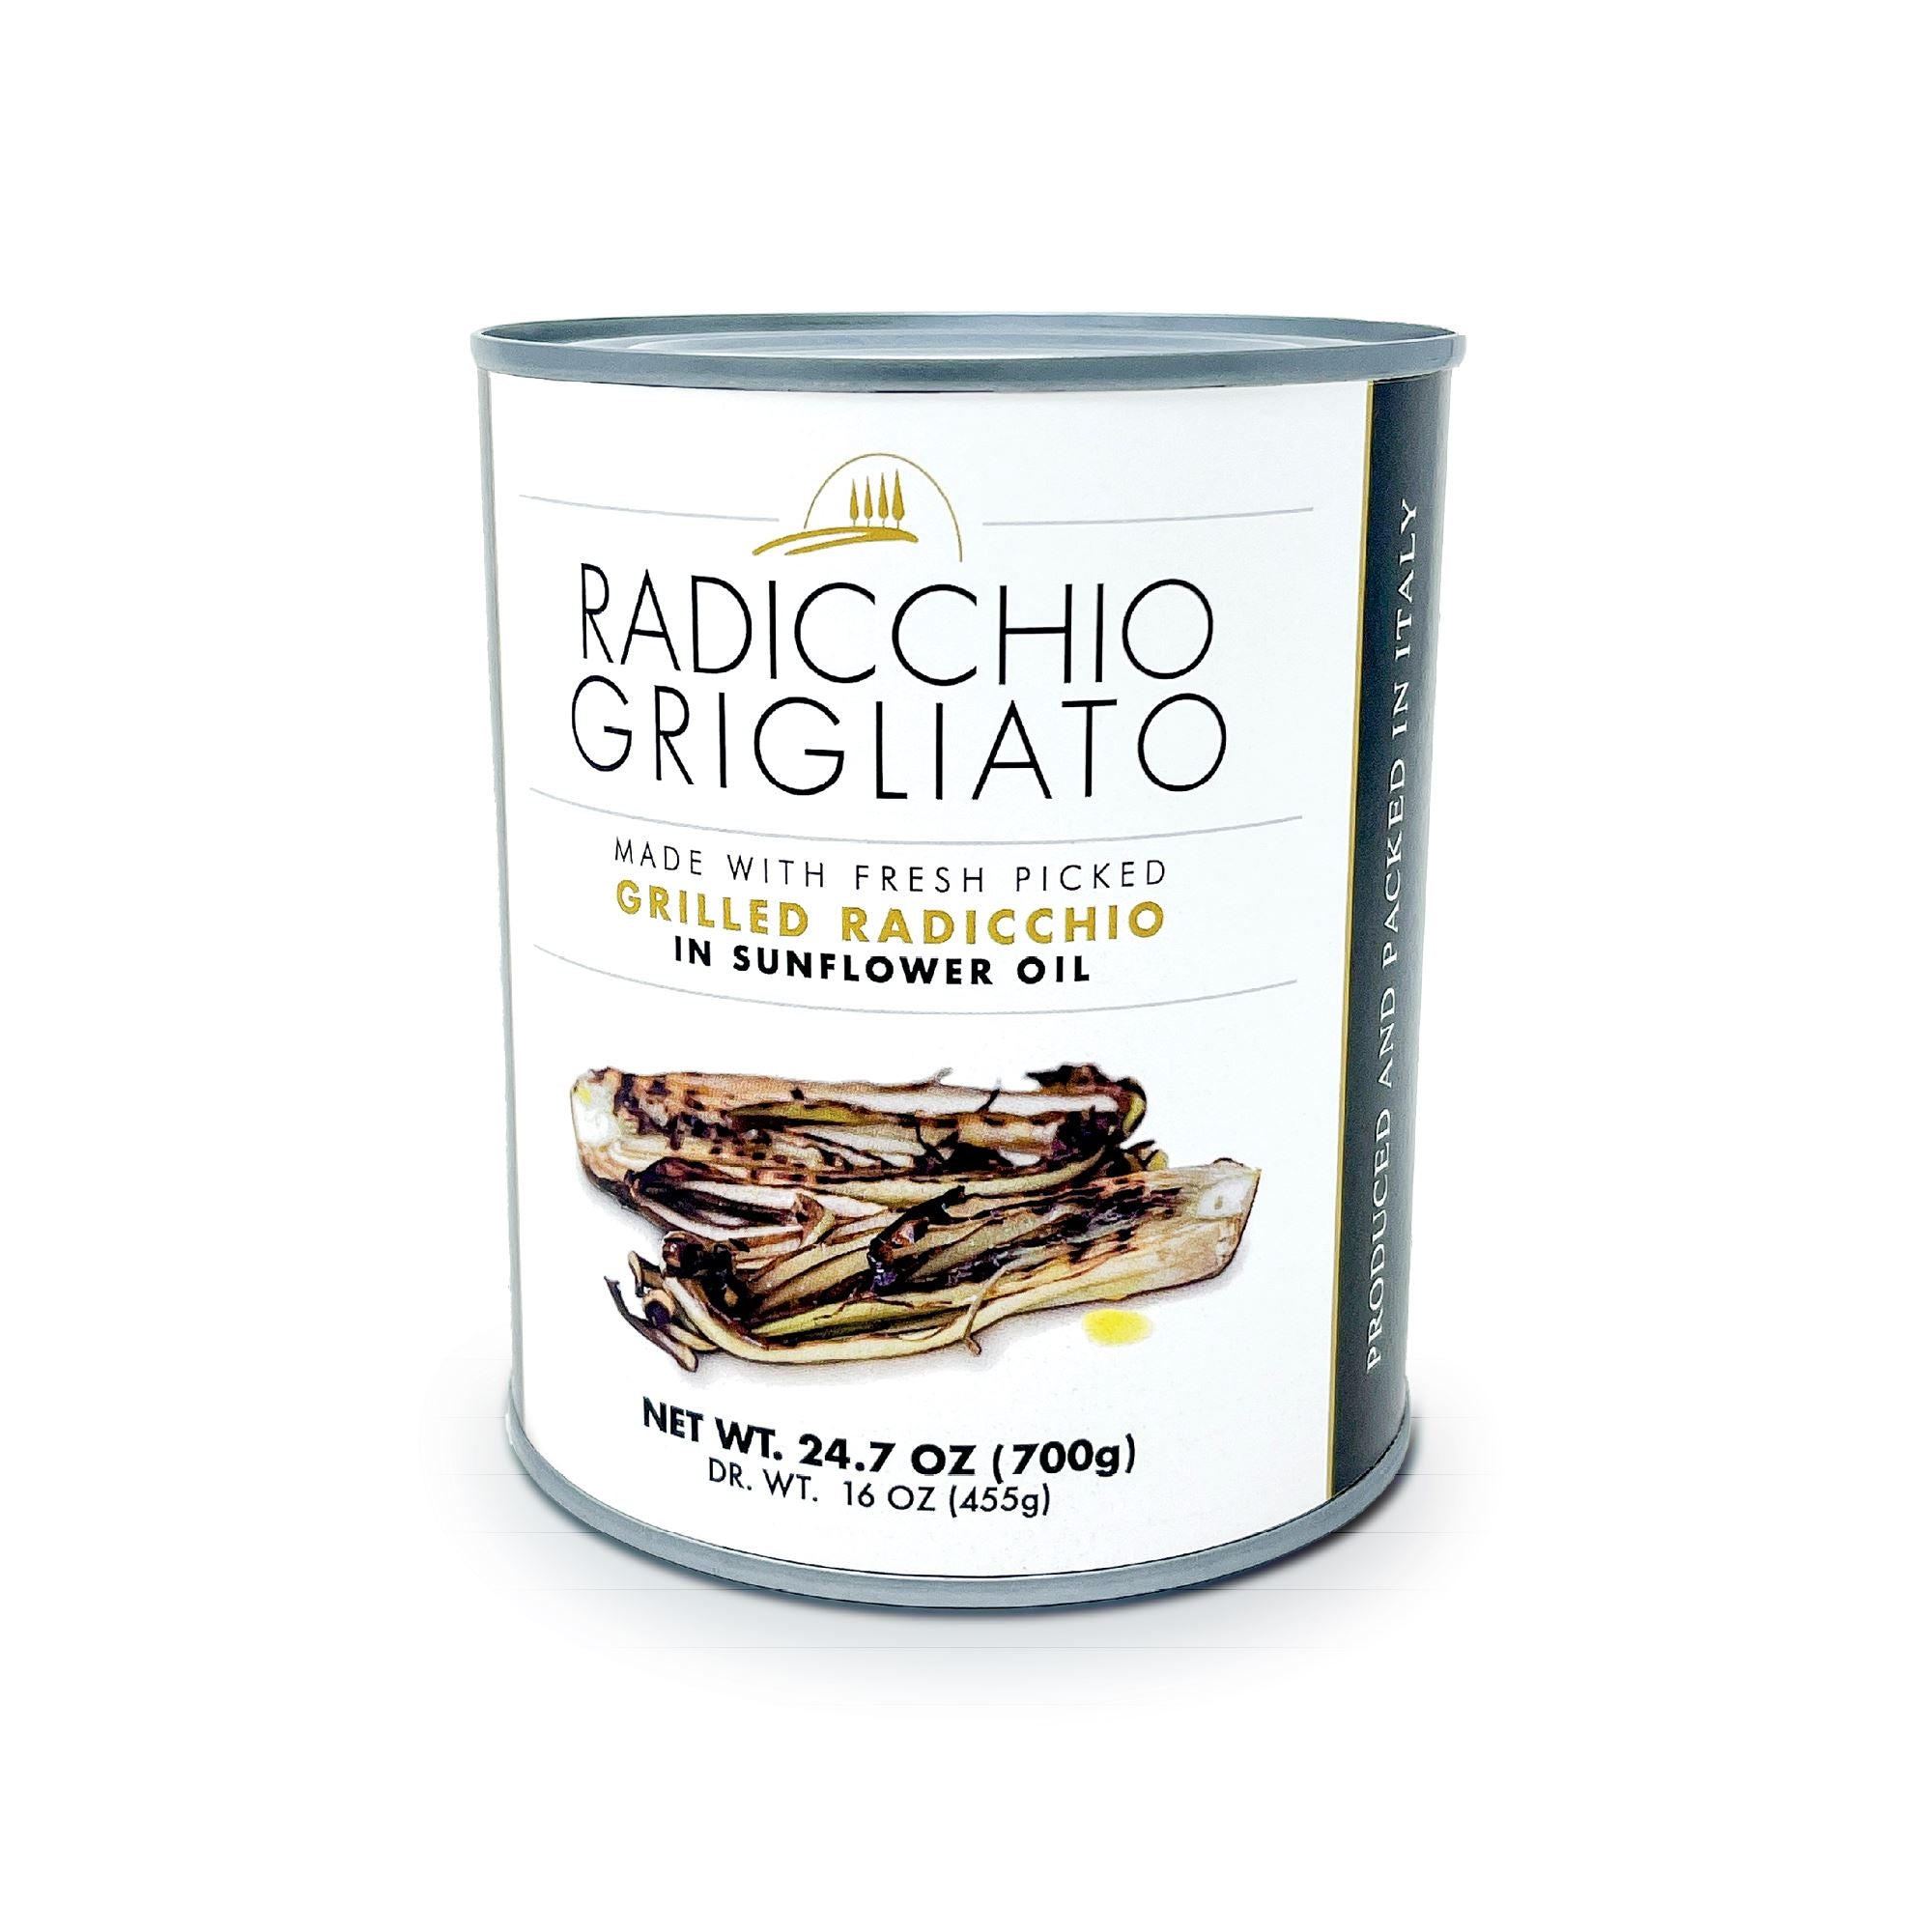 Radicchio Grigliato - Grilled Radicchio in Sunflower Oil